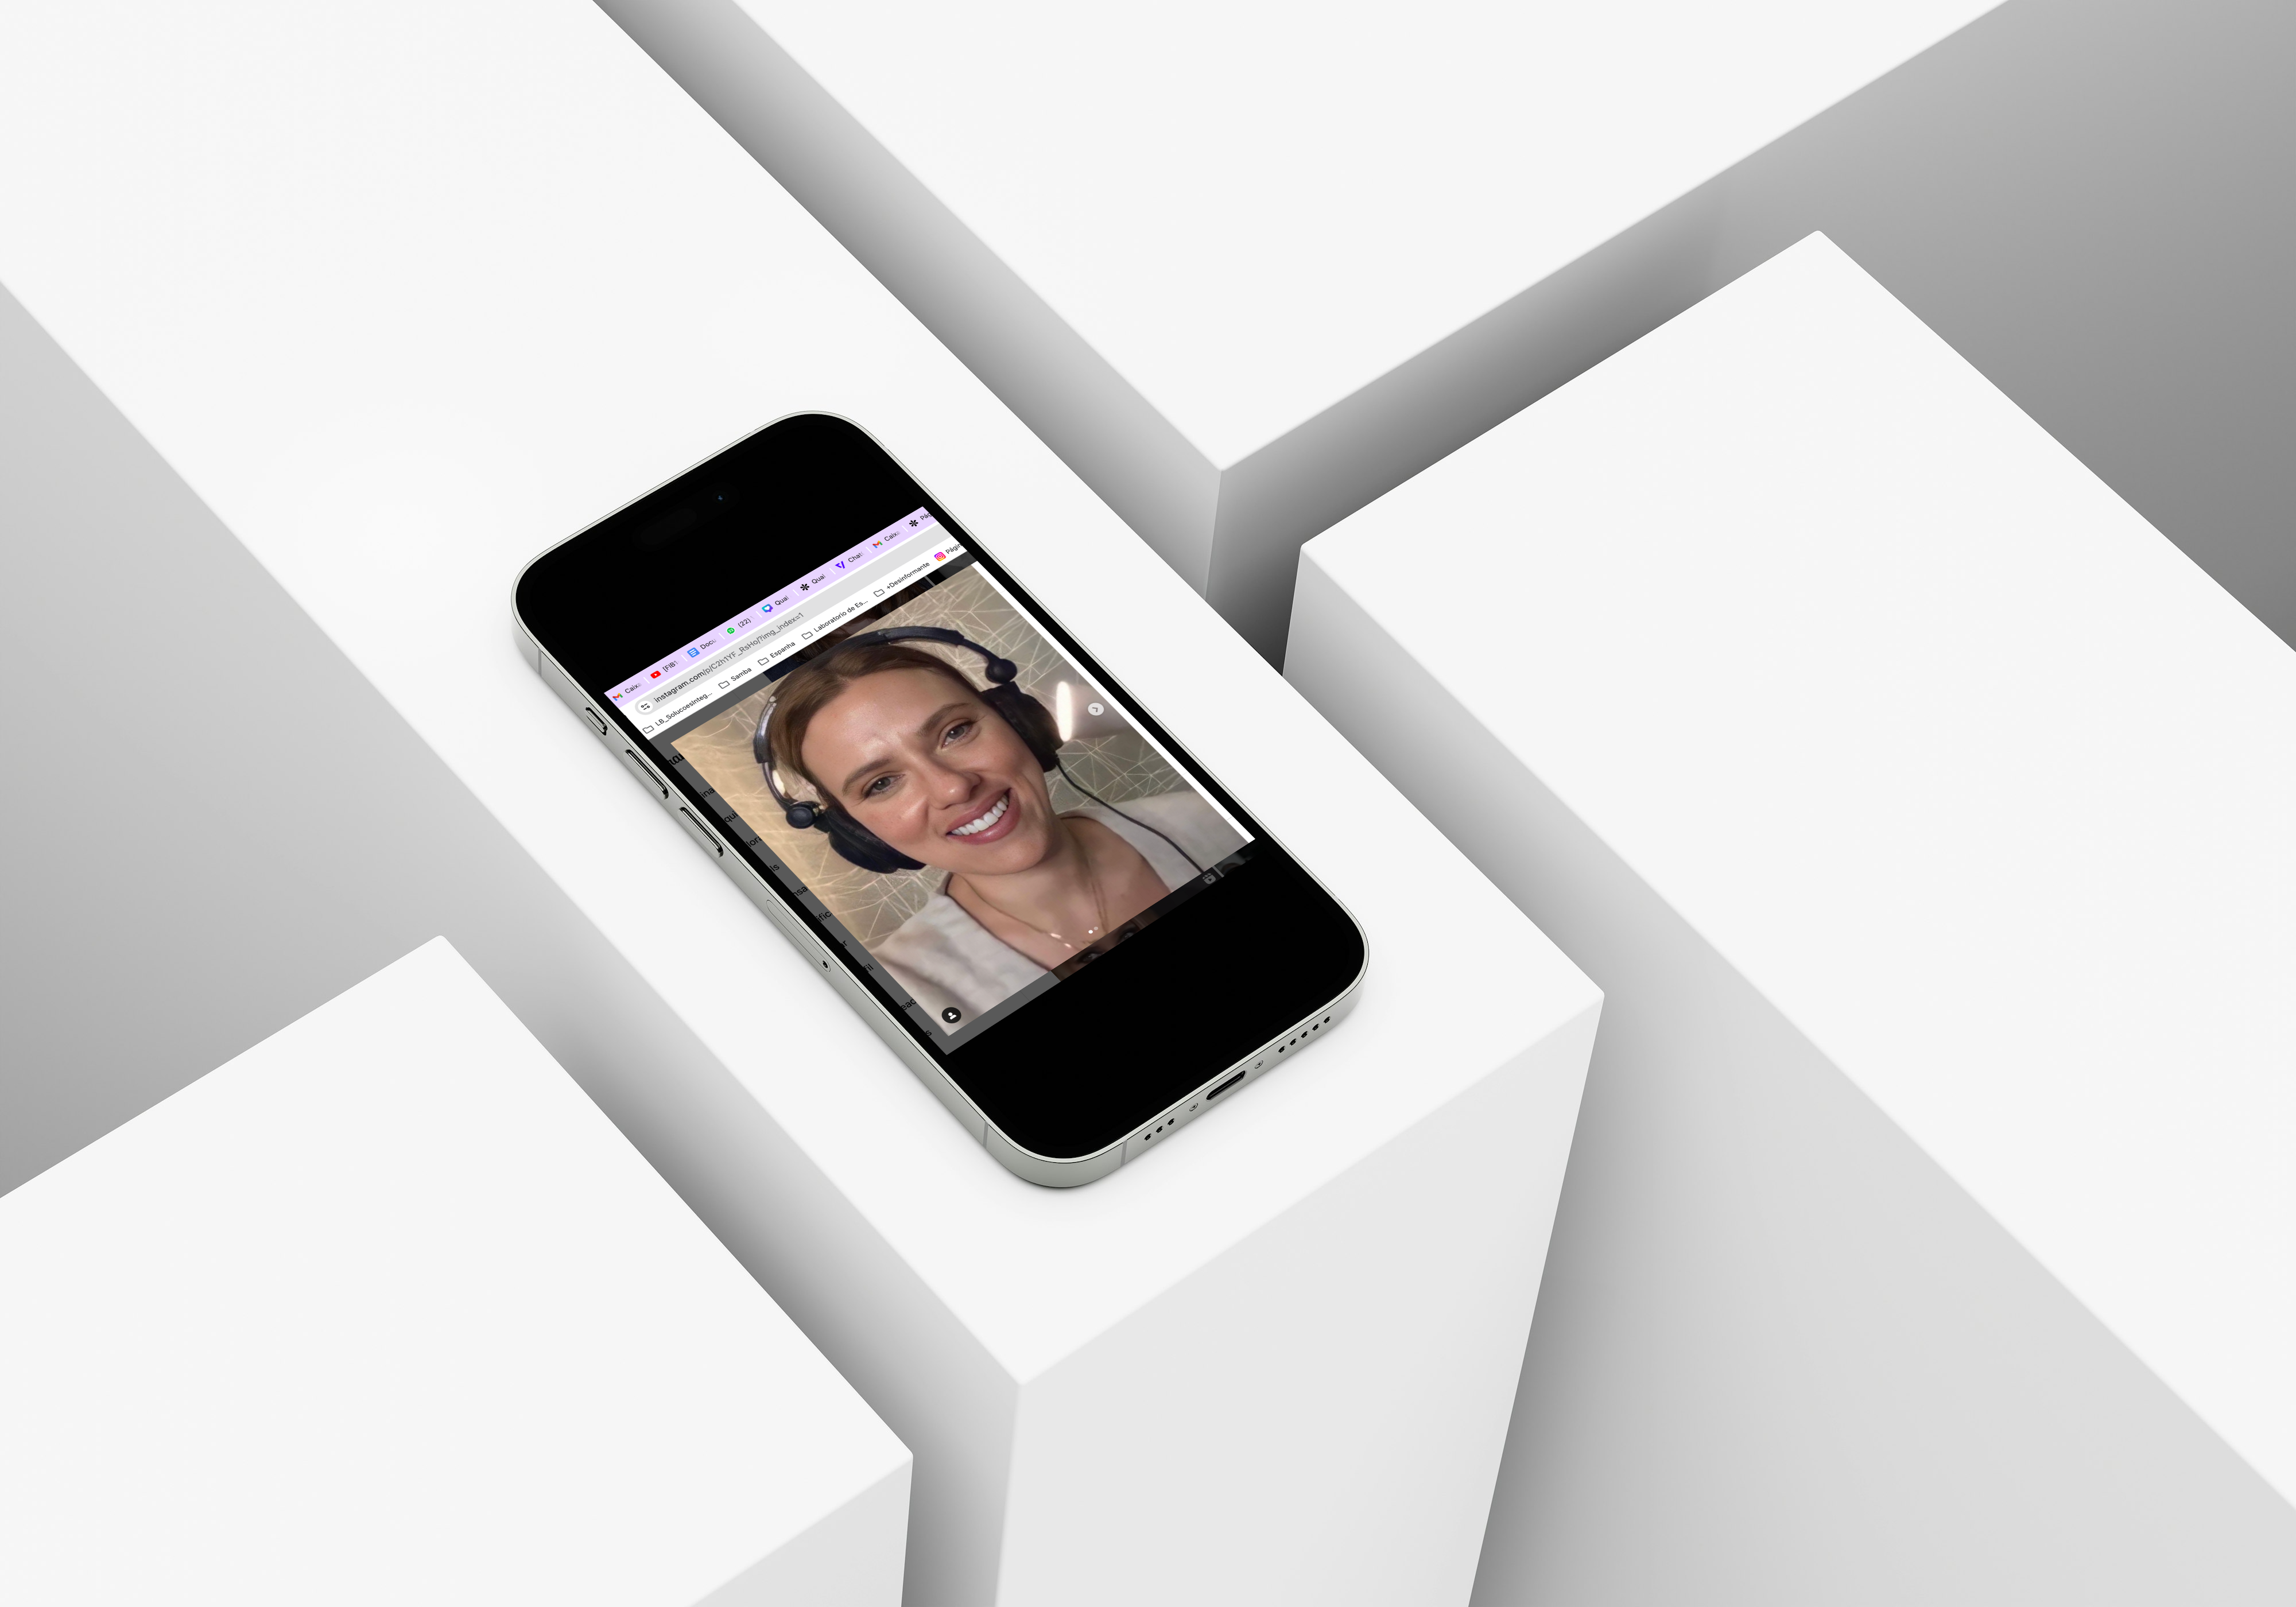 imagem tipo mockup de um celular sobre blocos verticais, com a foto da atriz Scarlett Johansson como se estivesse numa live em rede social